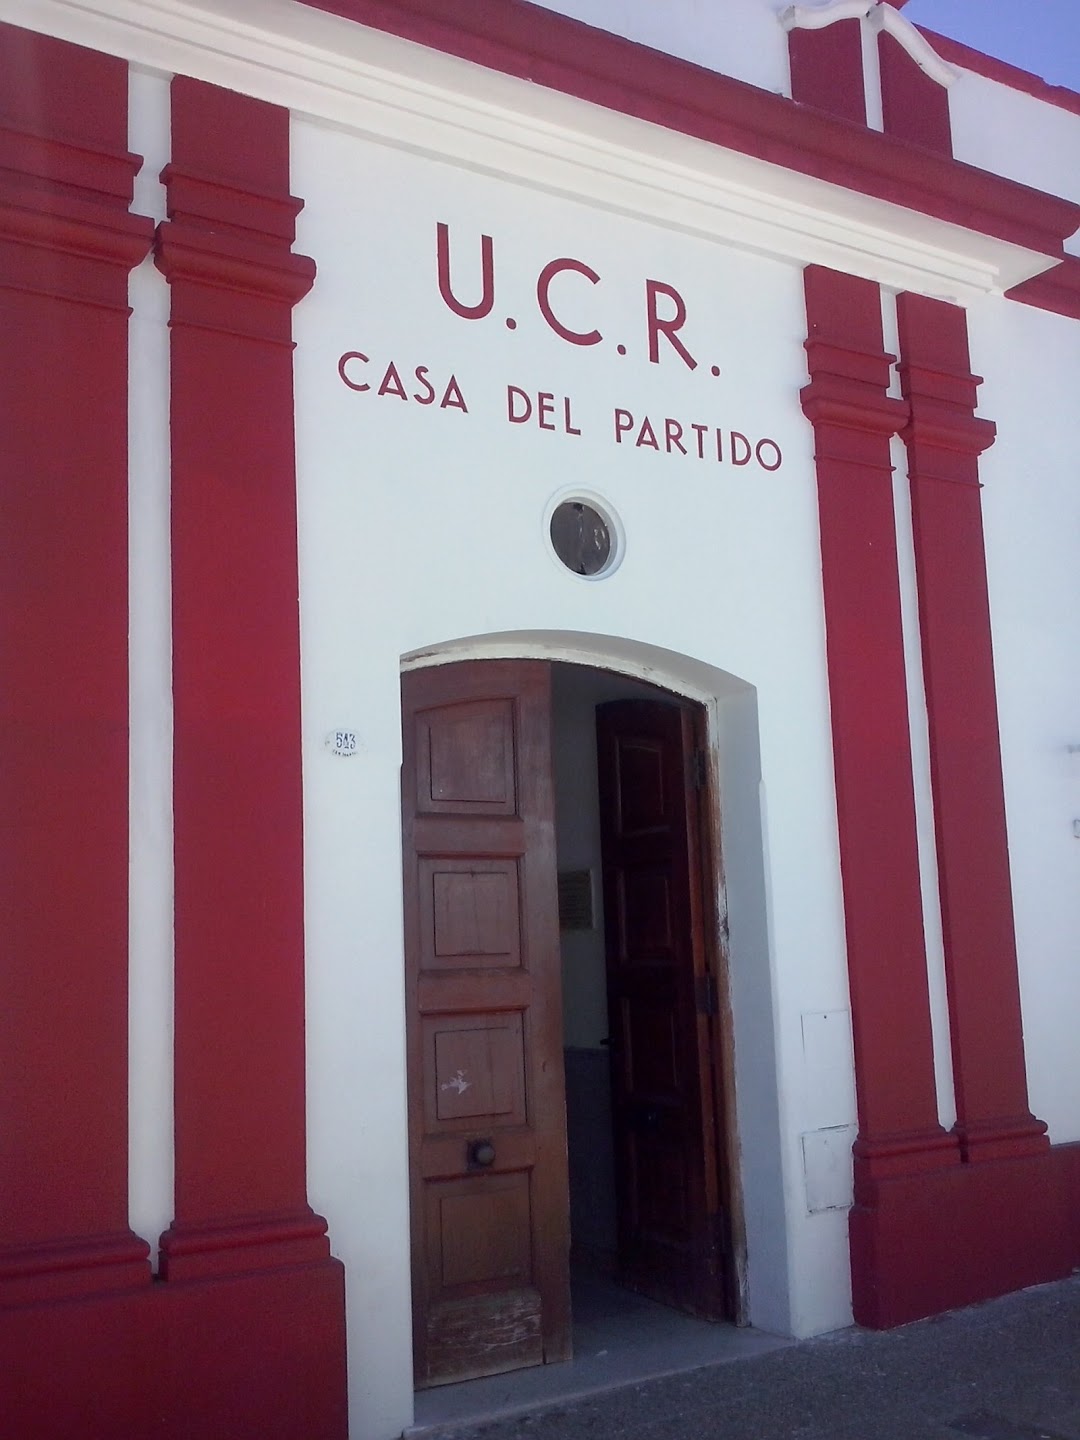 U.C.R. CASA DEL PARTIDO